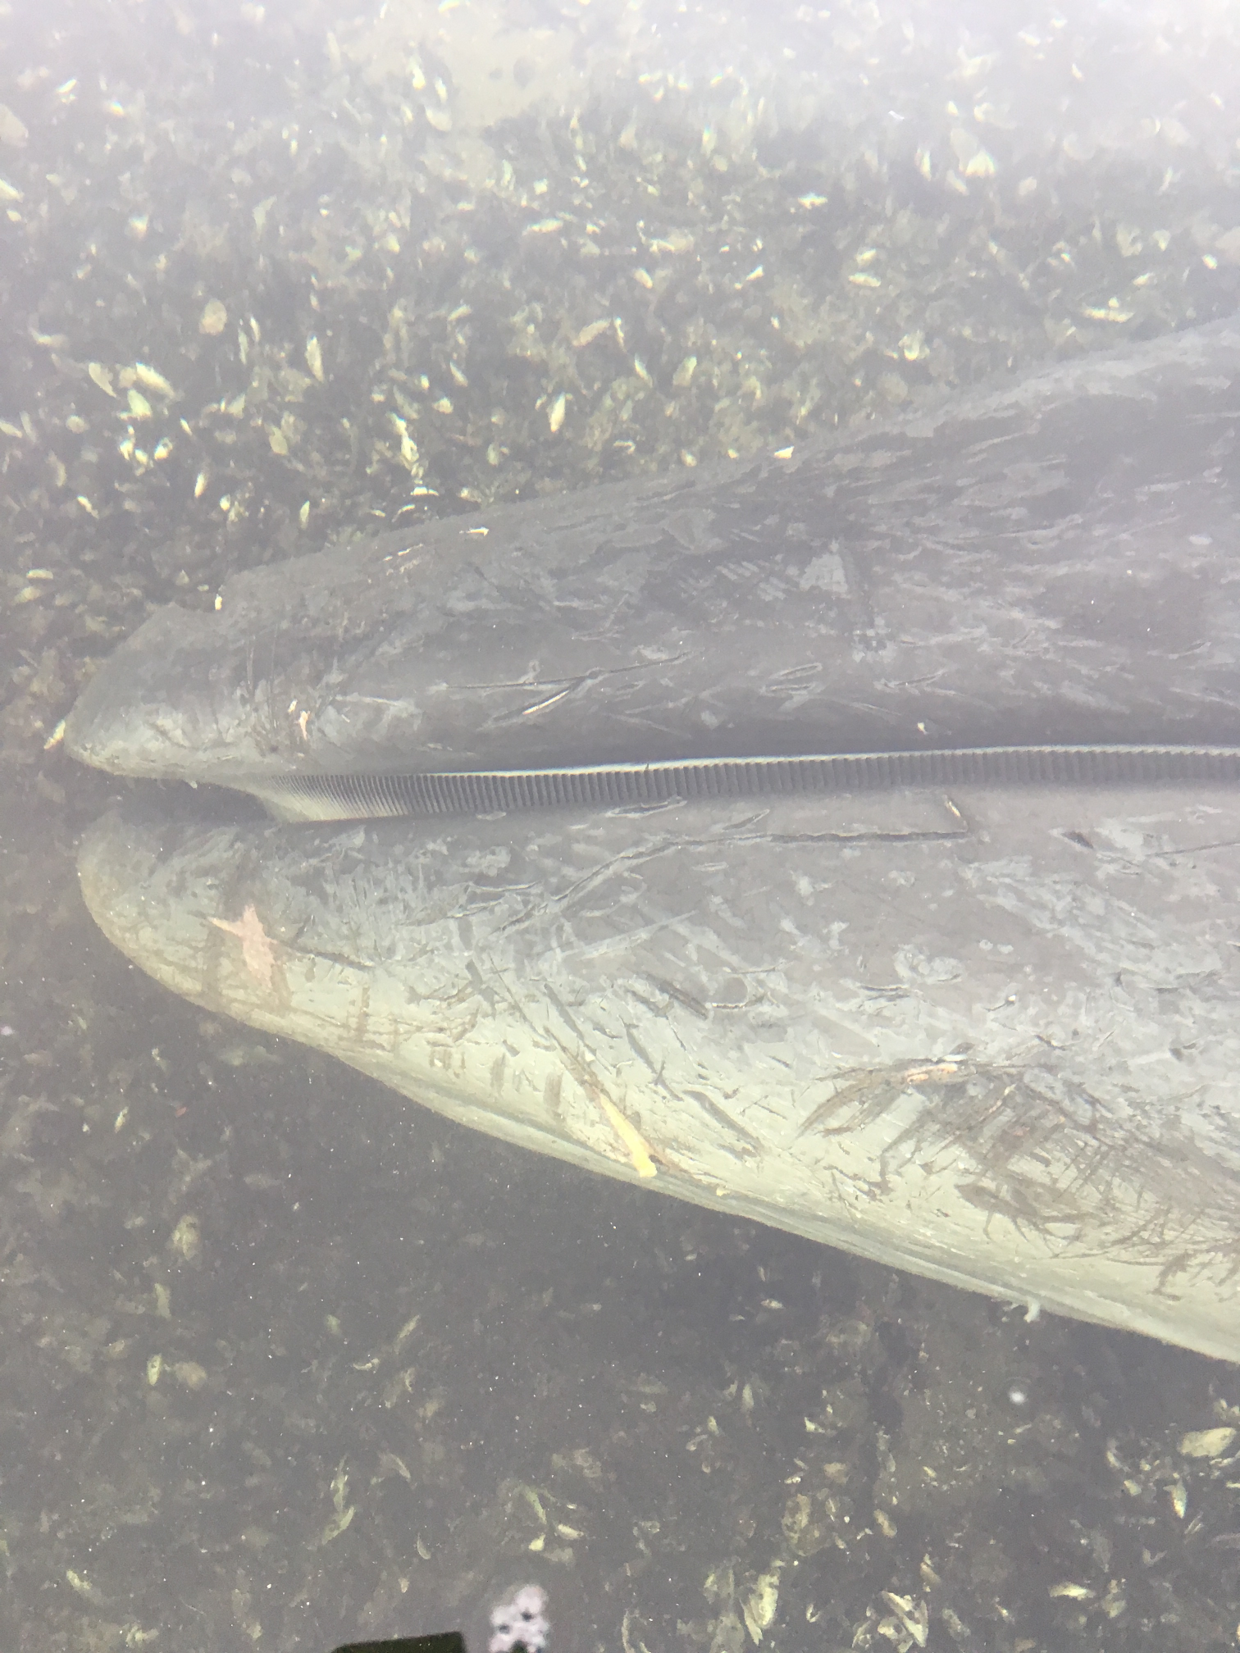 Hvalens barder ses tydeligt på dette billede. Foto: Michael Aagaard Olsen